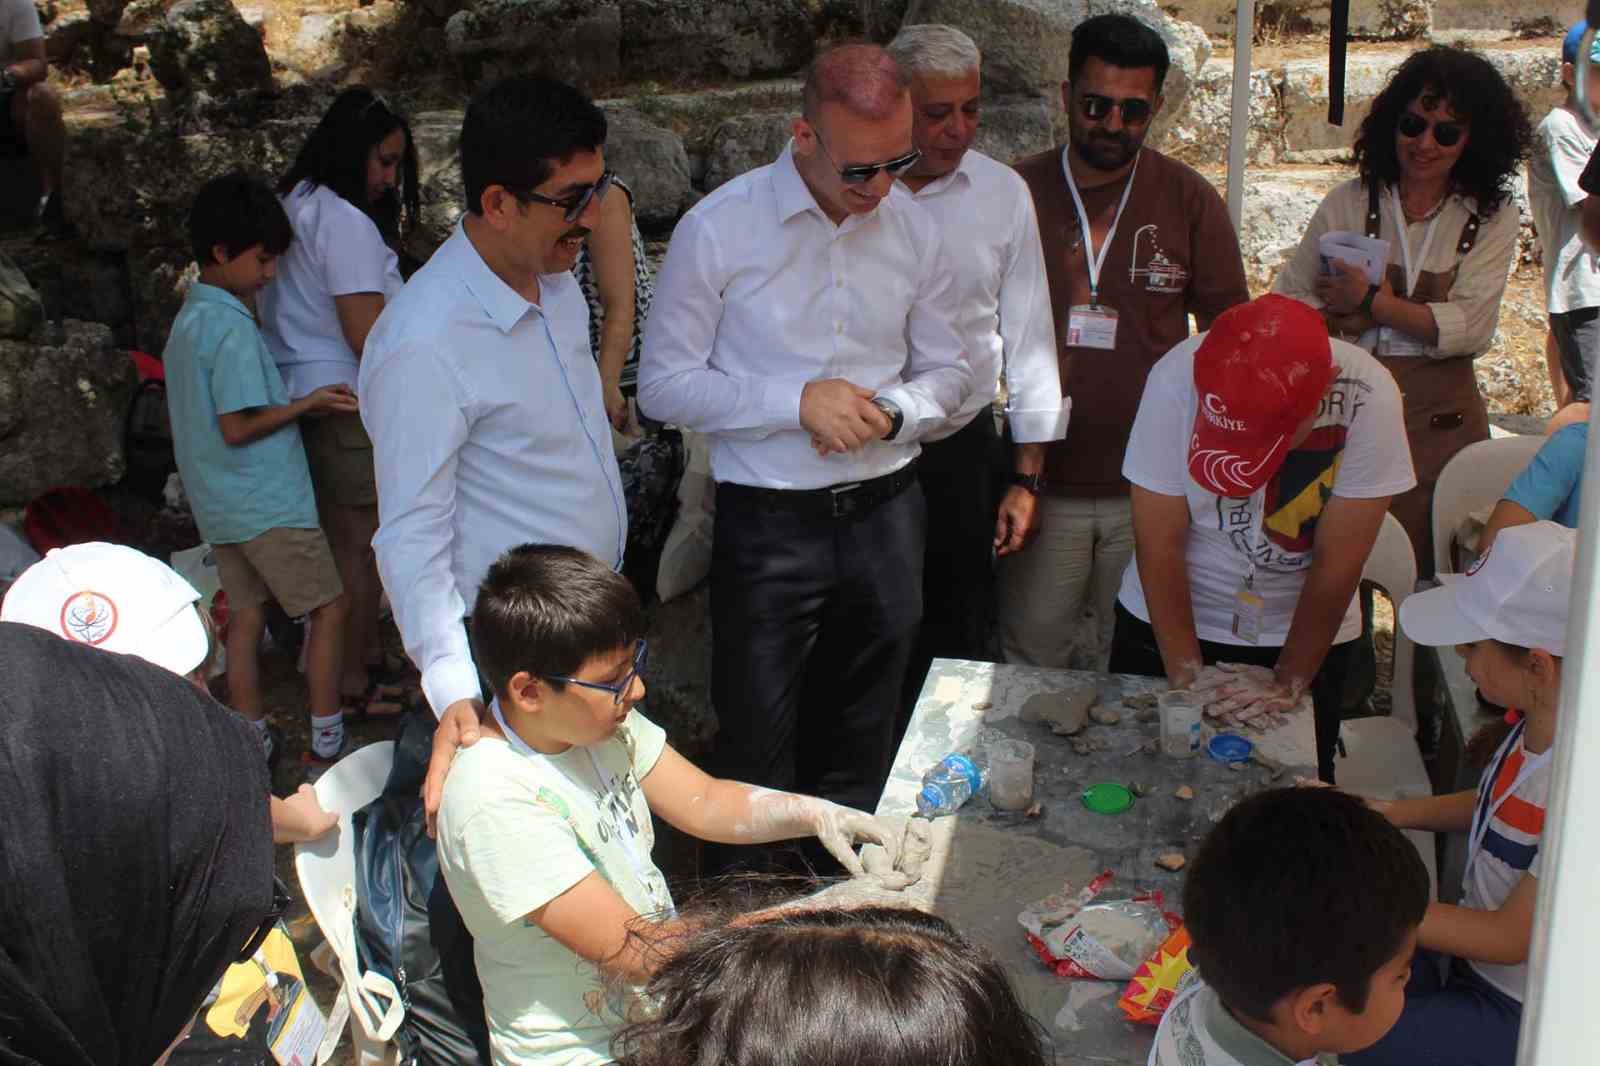 Köyceğiz’de Kültürel Miras Çocuk Çalıştayı atölye çalışmaları yapıldı
